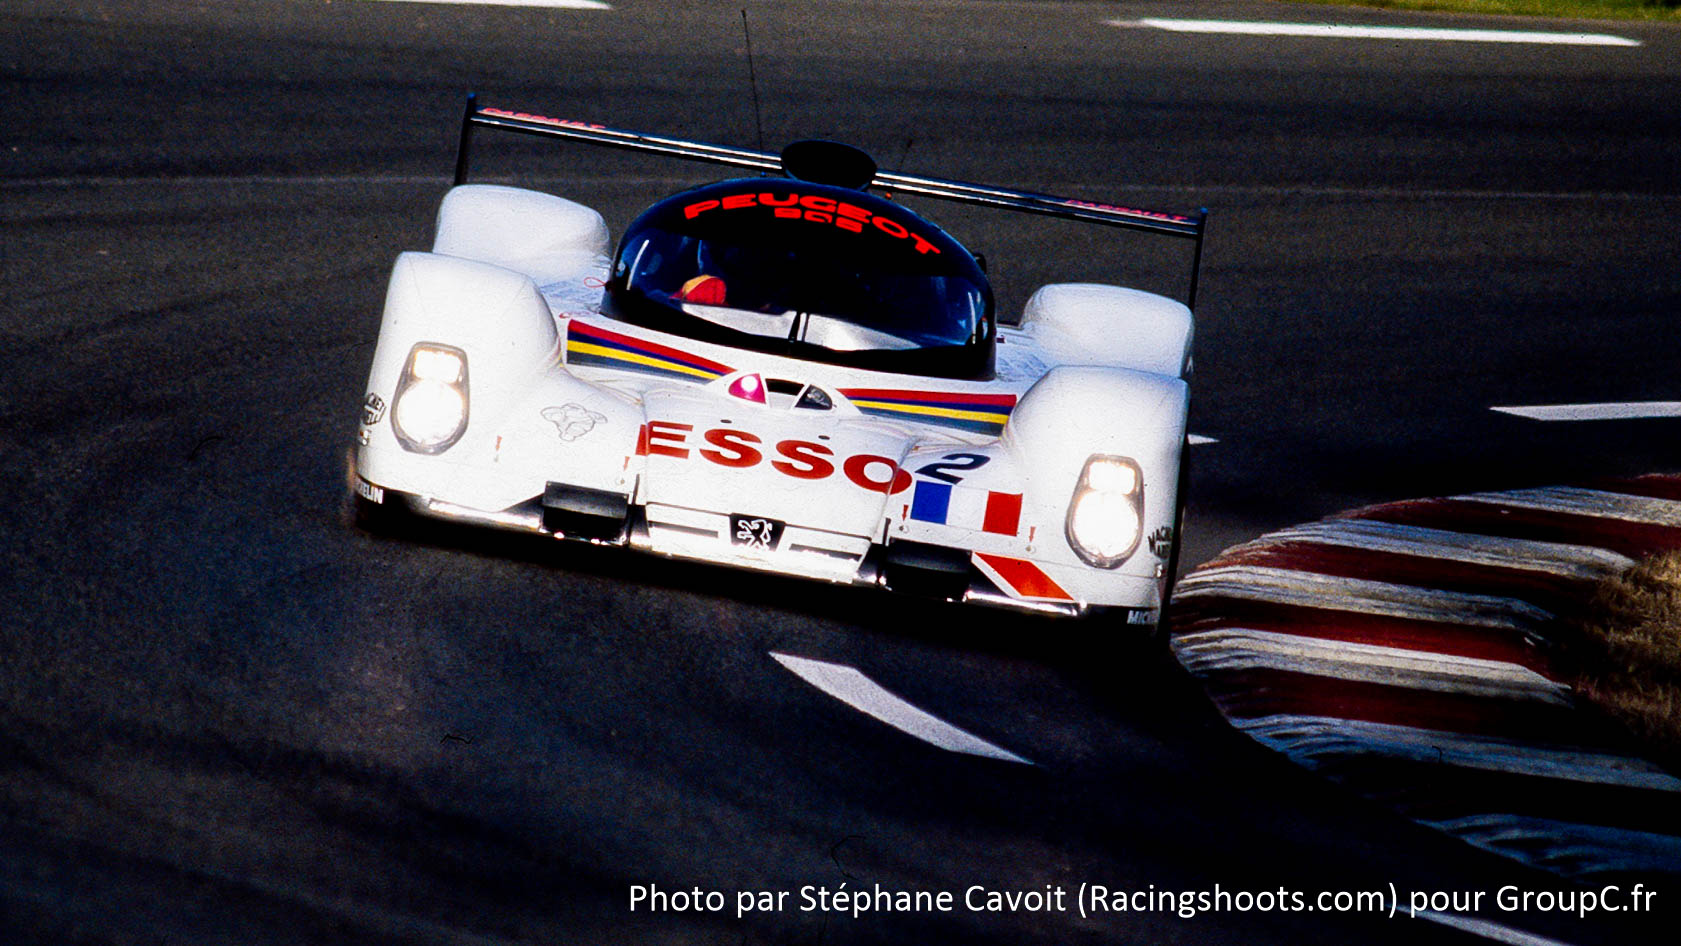 Peugeot 905, 24 Heures du Mans 1993 - photo Stéphane Cavoit